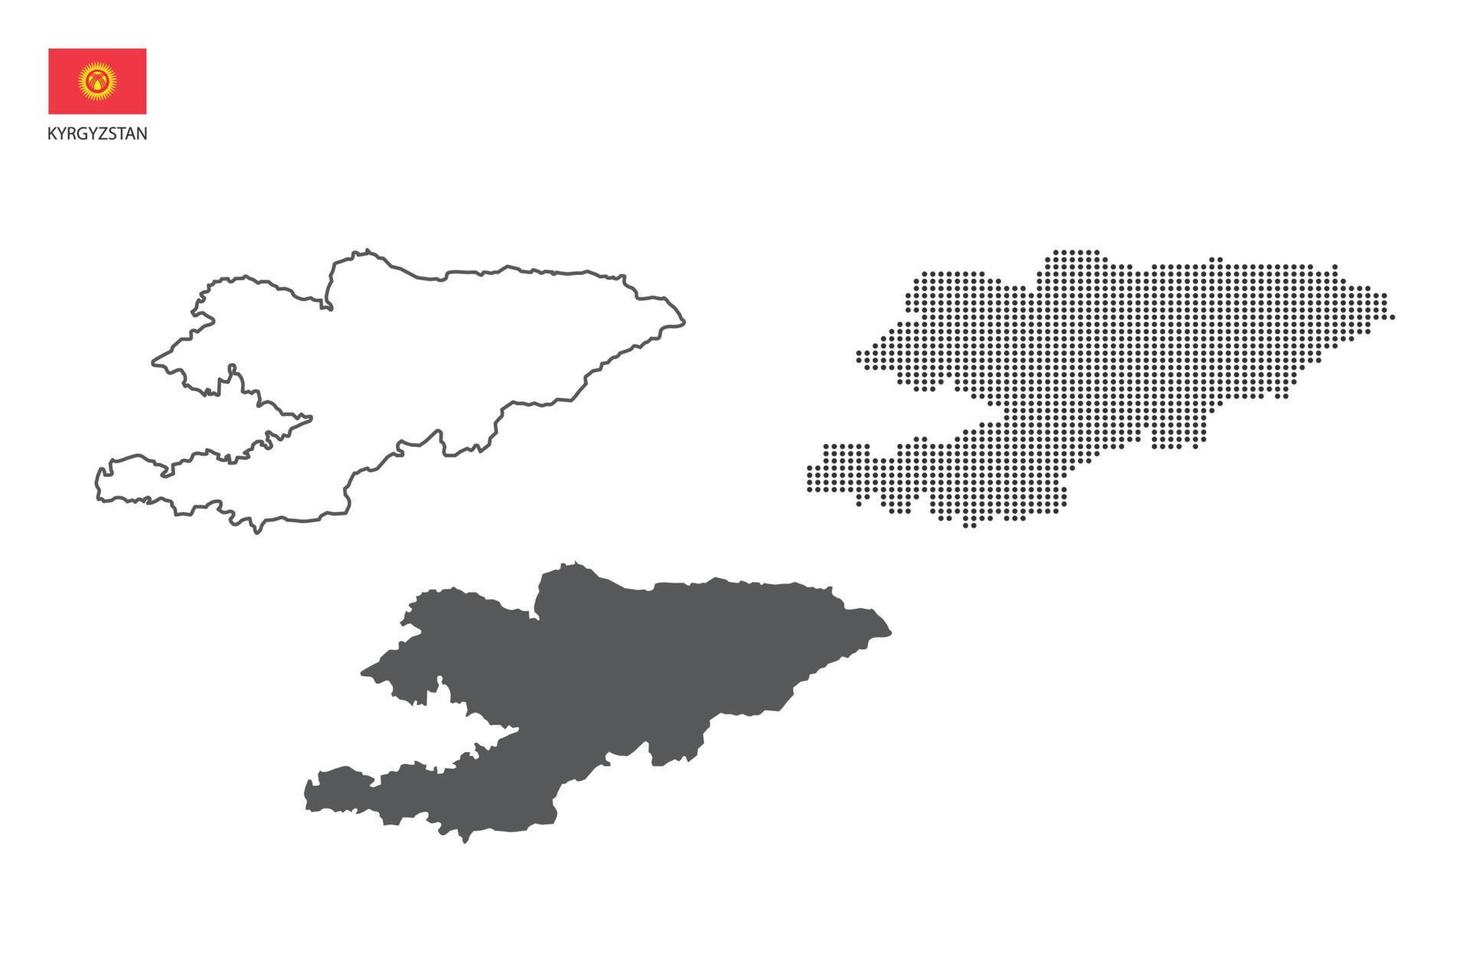 3 versões do vetor da cidade do mapa do Quirguistão pelo estilo de simplicidade de contorno preto fino, estilo de ponto preto e estilo de sombra escura. tudo no fundo branco.